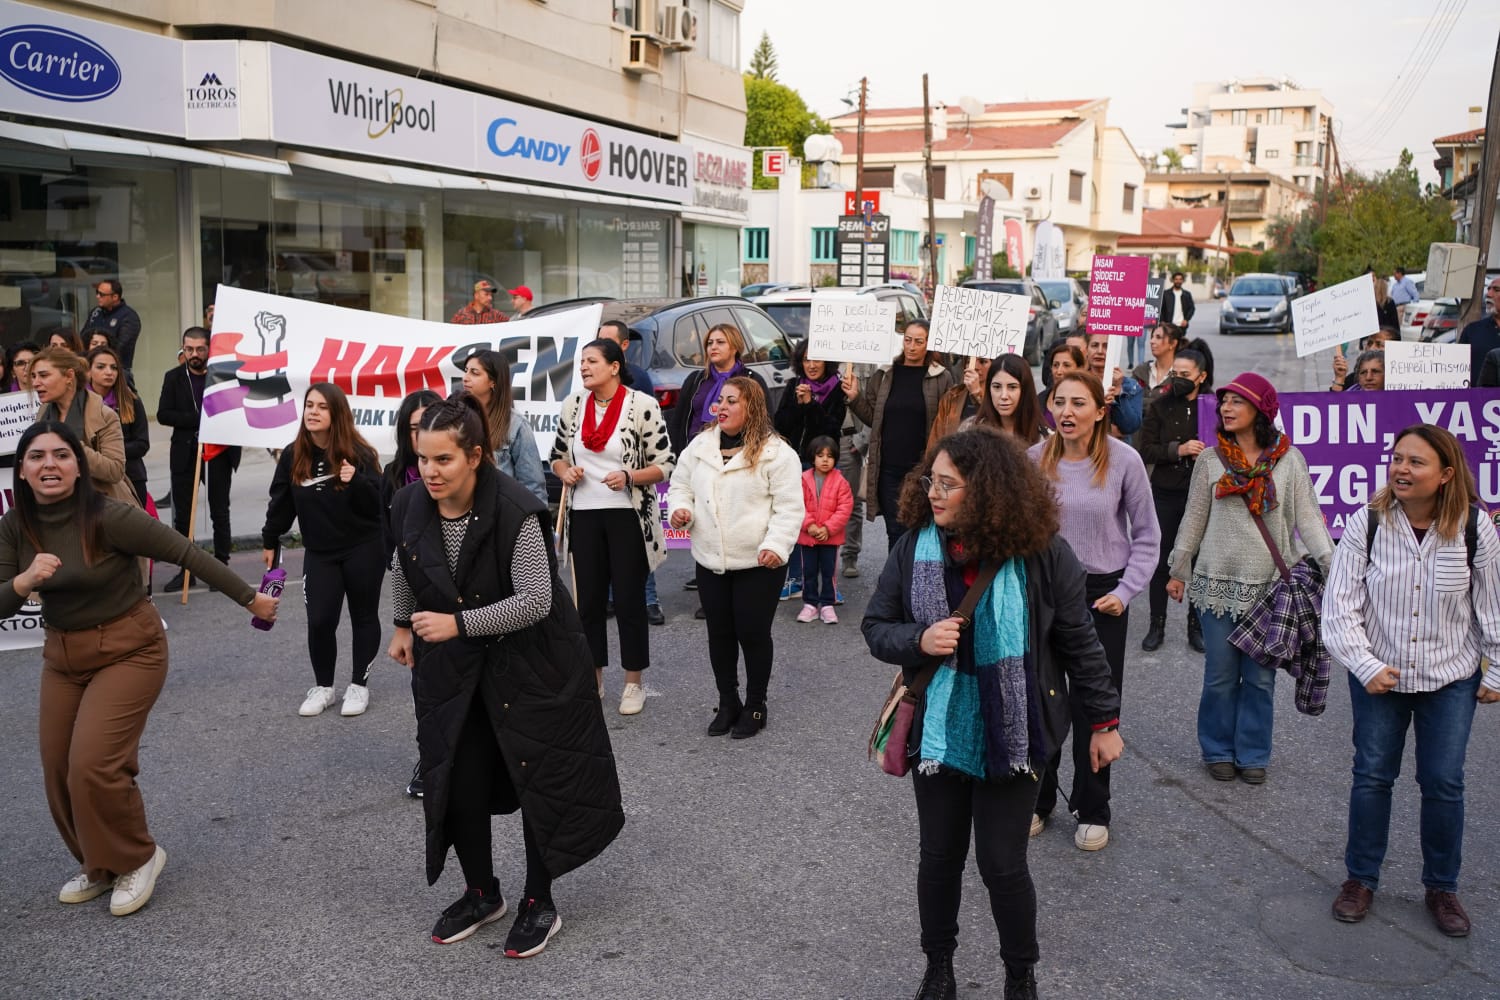 Baraka Kültür Merkezi; 25 Kasım’da Sokaklar İnledi: Kıbrıs’ta Tarikat İstemiyoruz